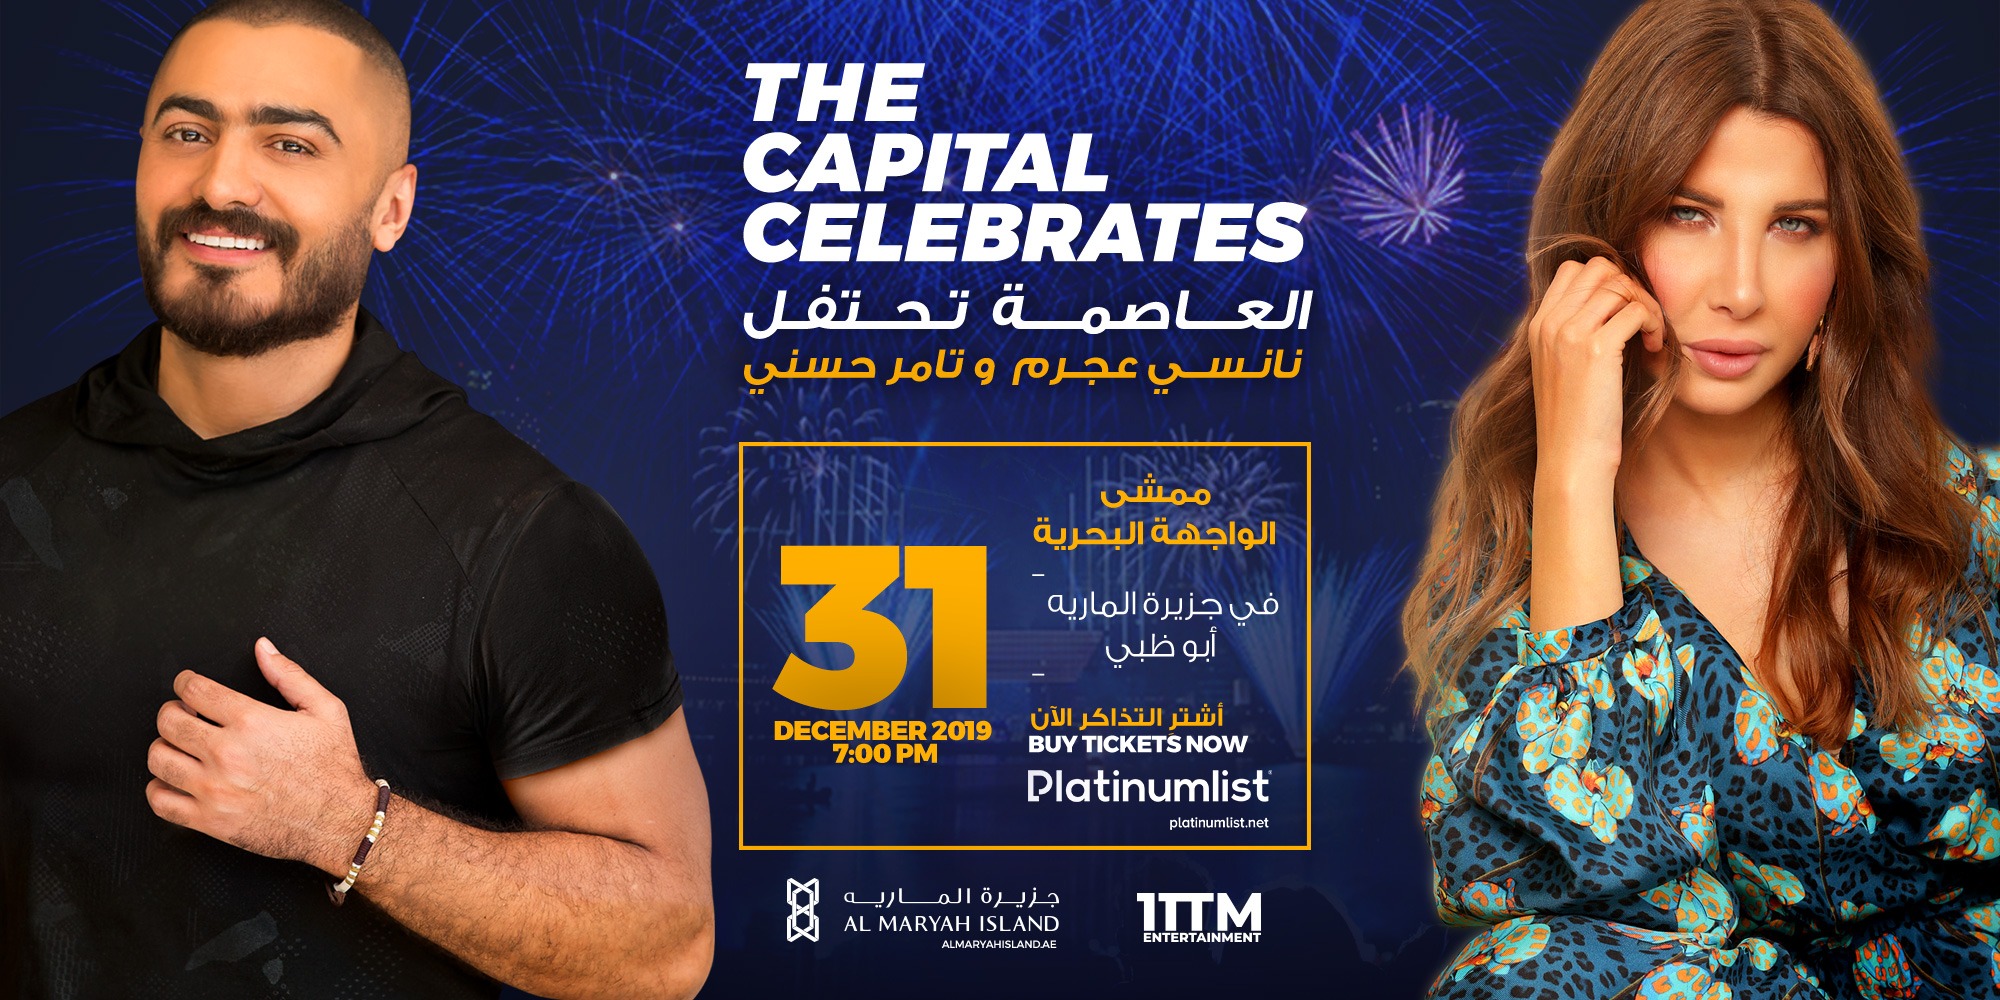 The Capital Celebrates: Nancy Ajram & Tamer Hosny - Coming Soon in UAE